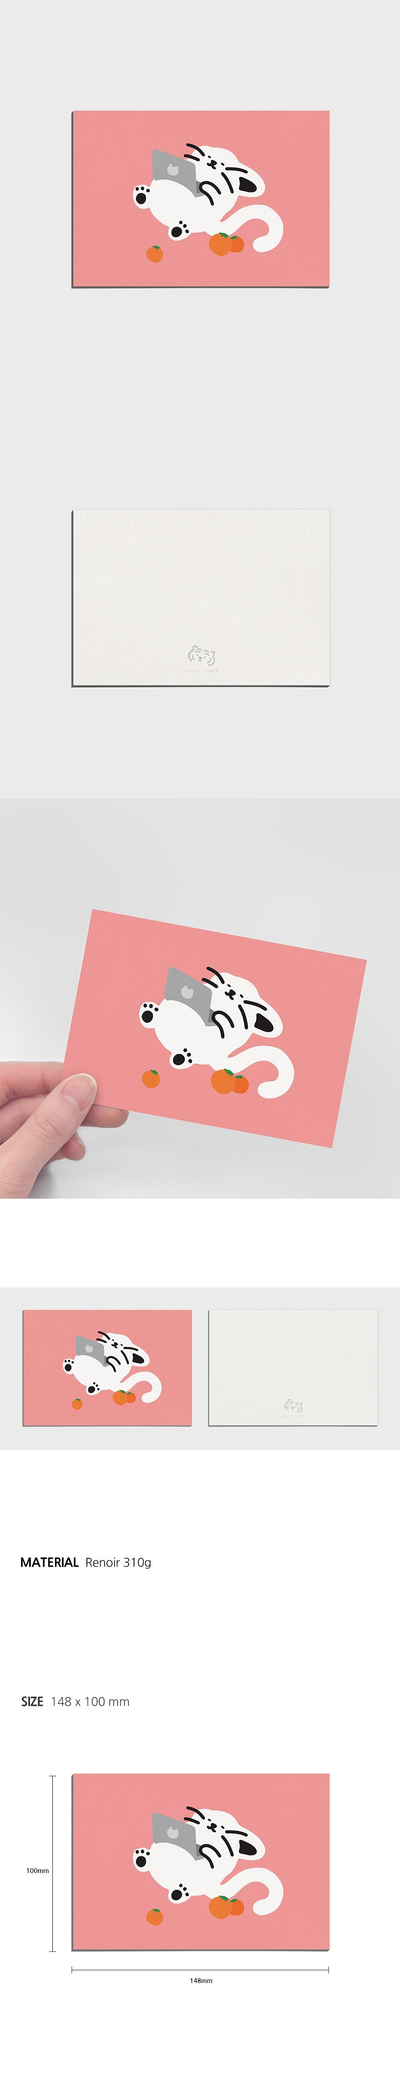 Tangerine Mouse ポストカード